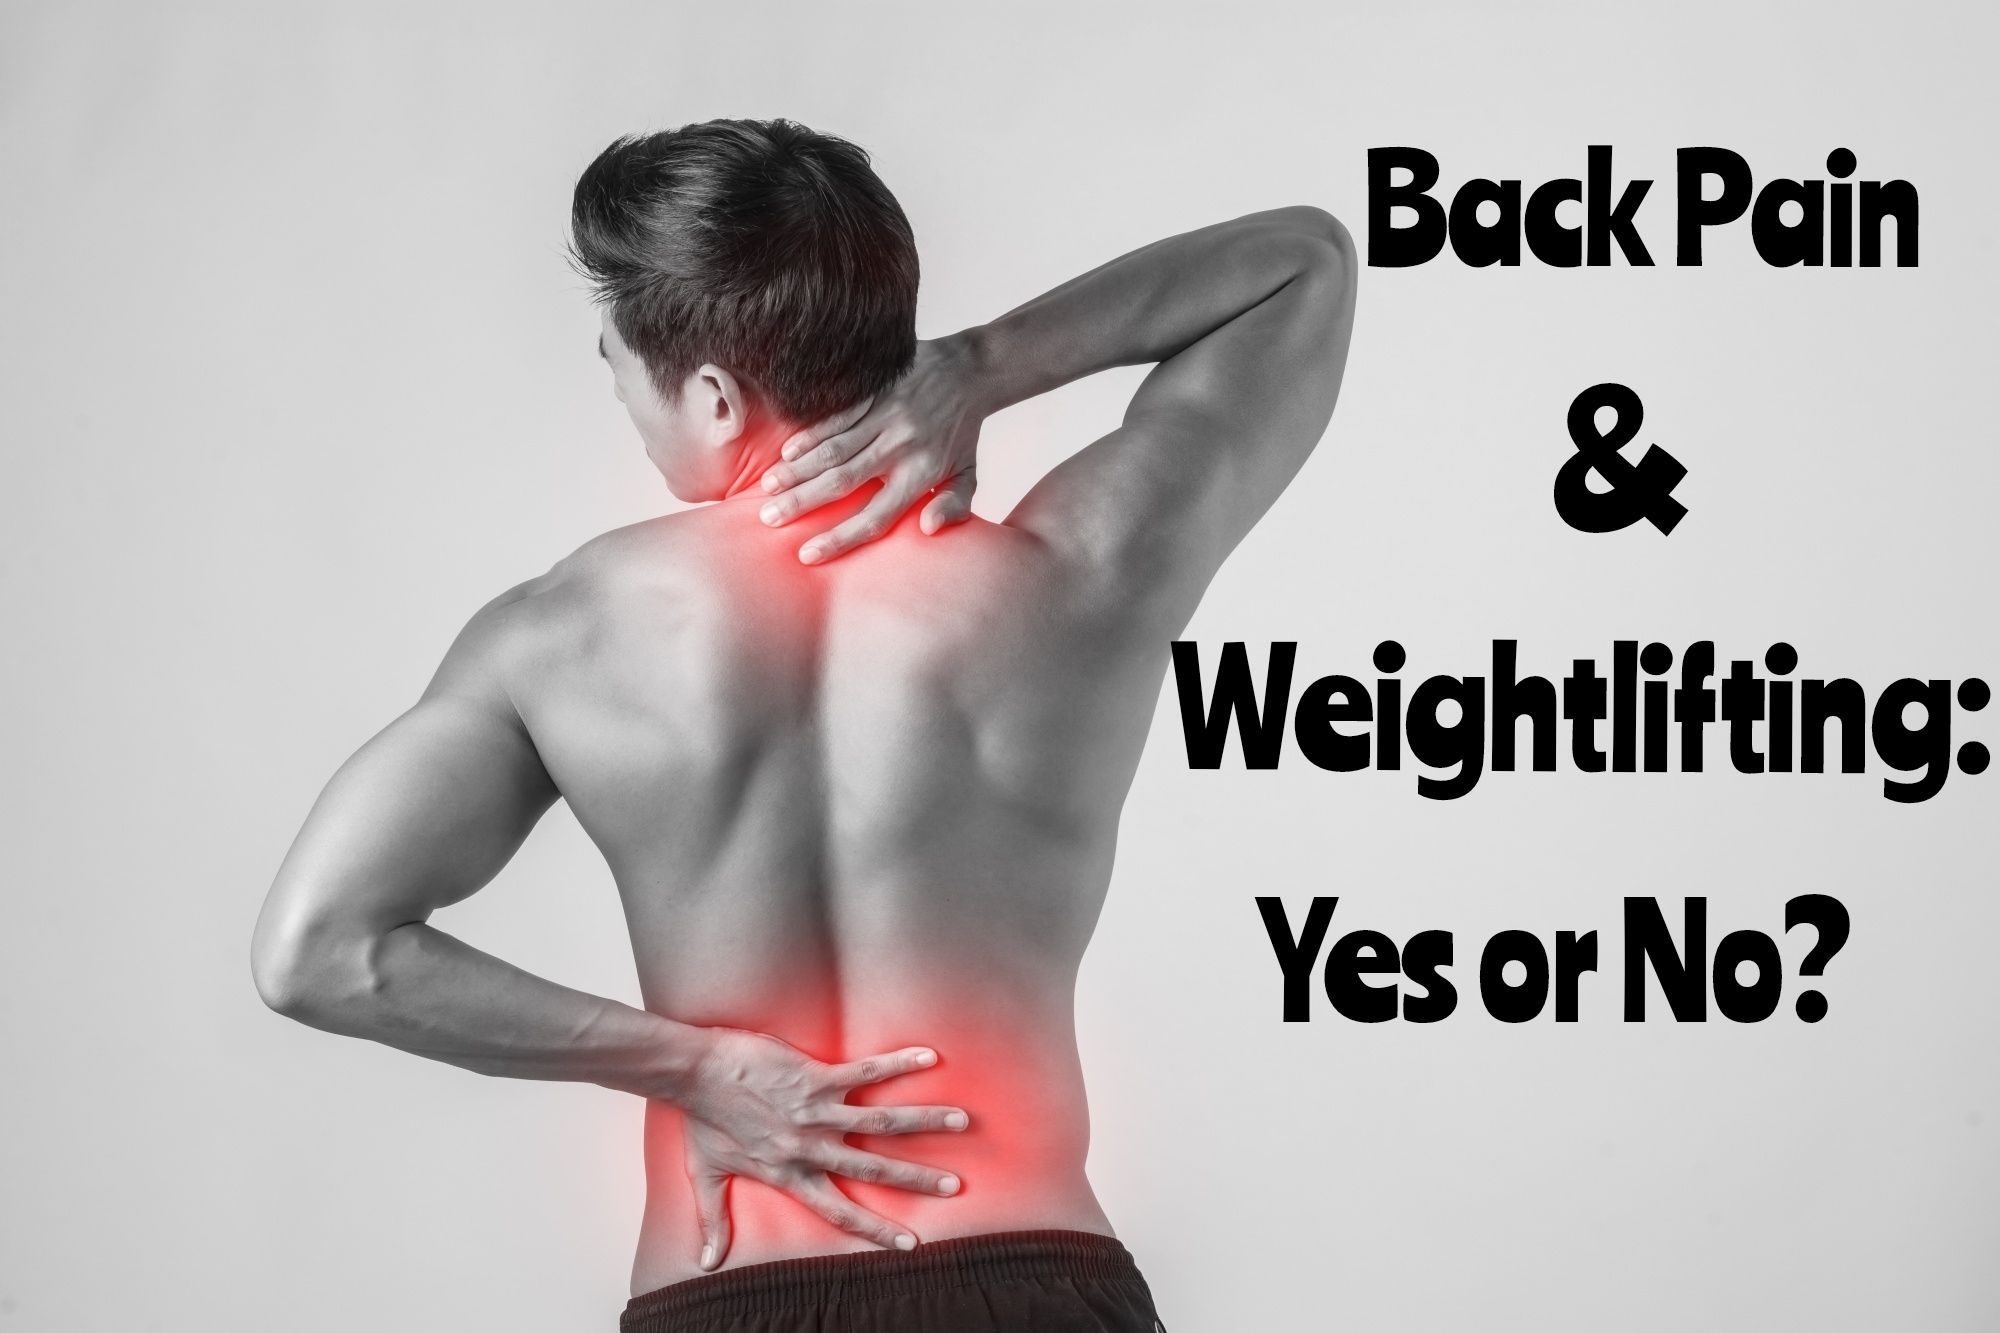 Back-Pain-Lift-or-Lighten-Up?